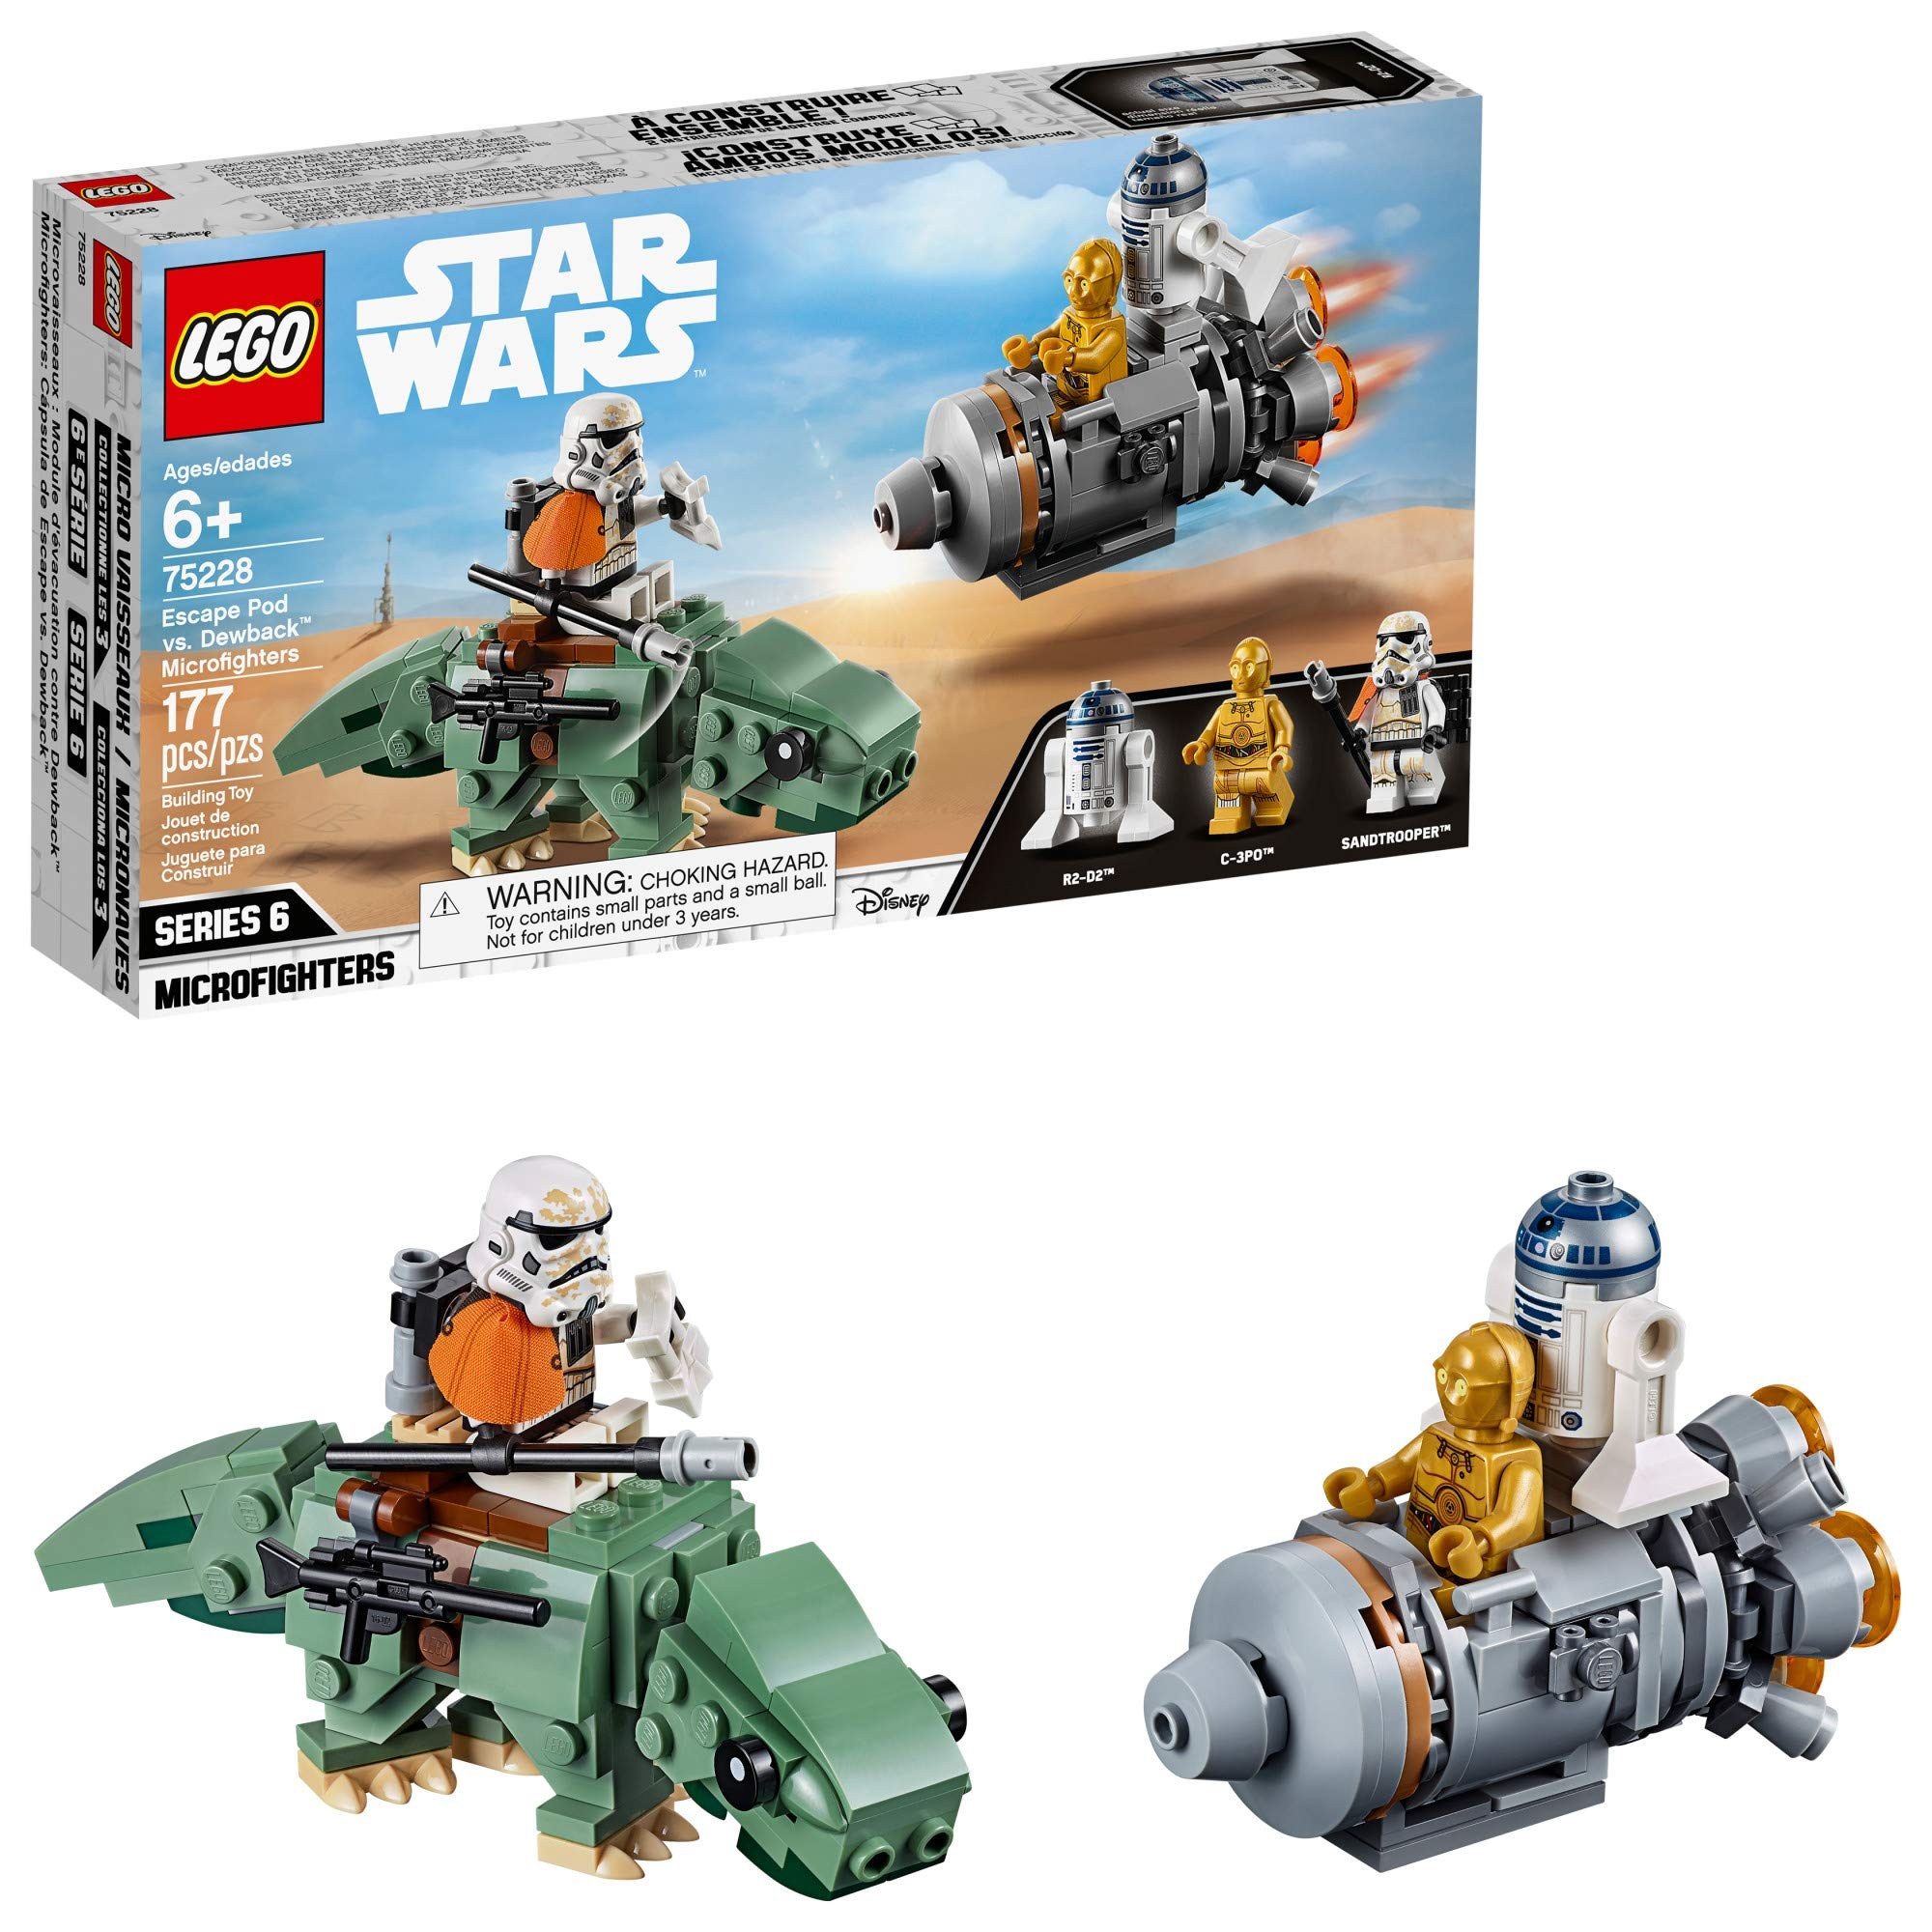 LEGO Star Wars A New Hope Escape Pod vs. Dewback Microfighters 75228 Buildi, 본품선택 